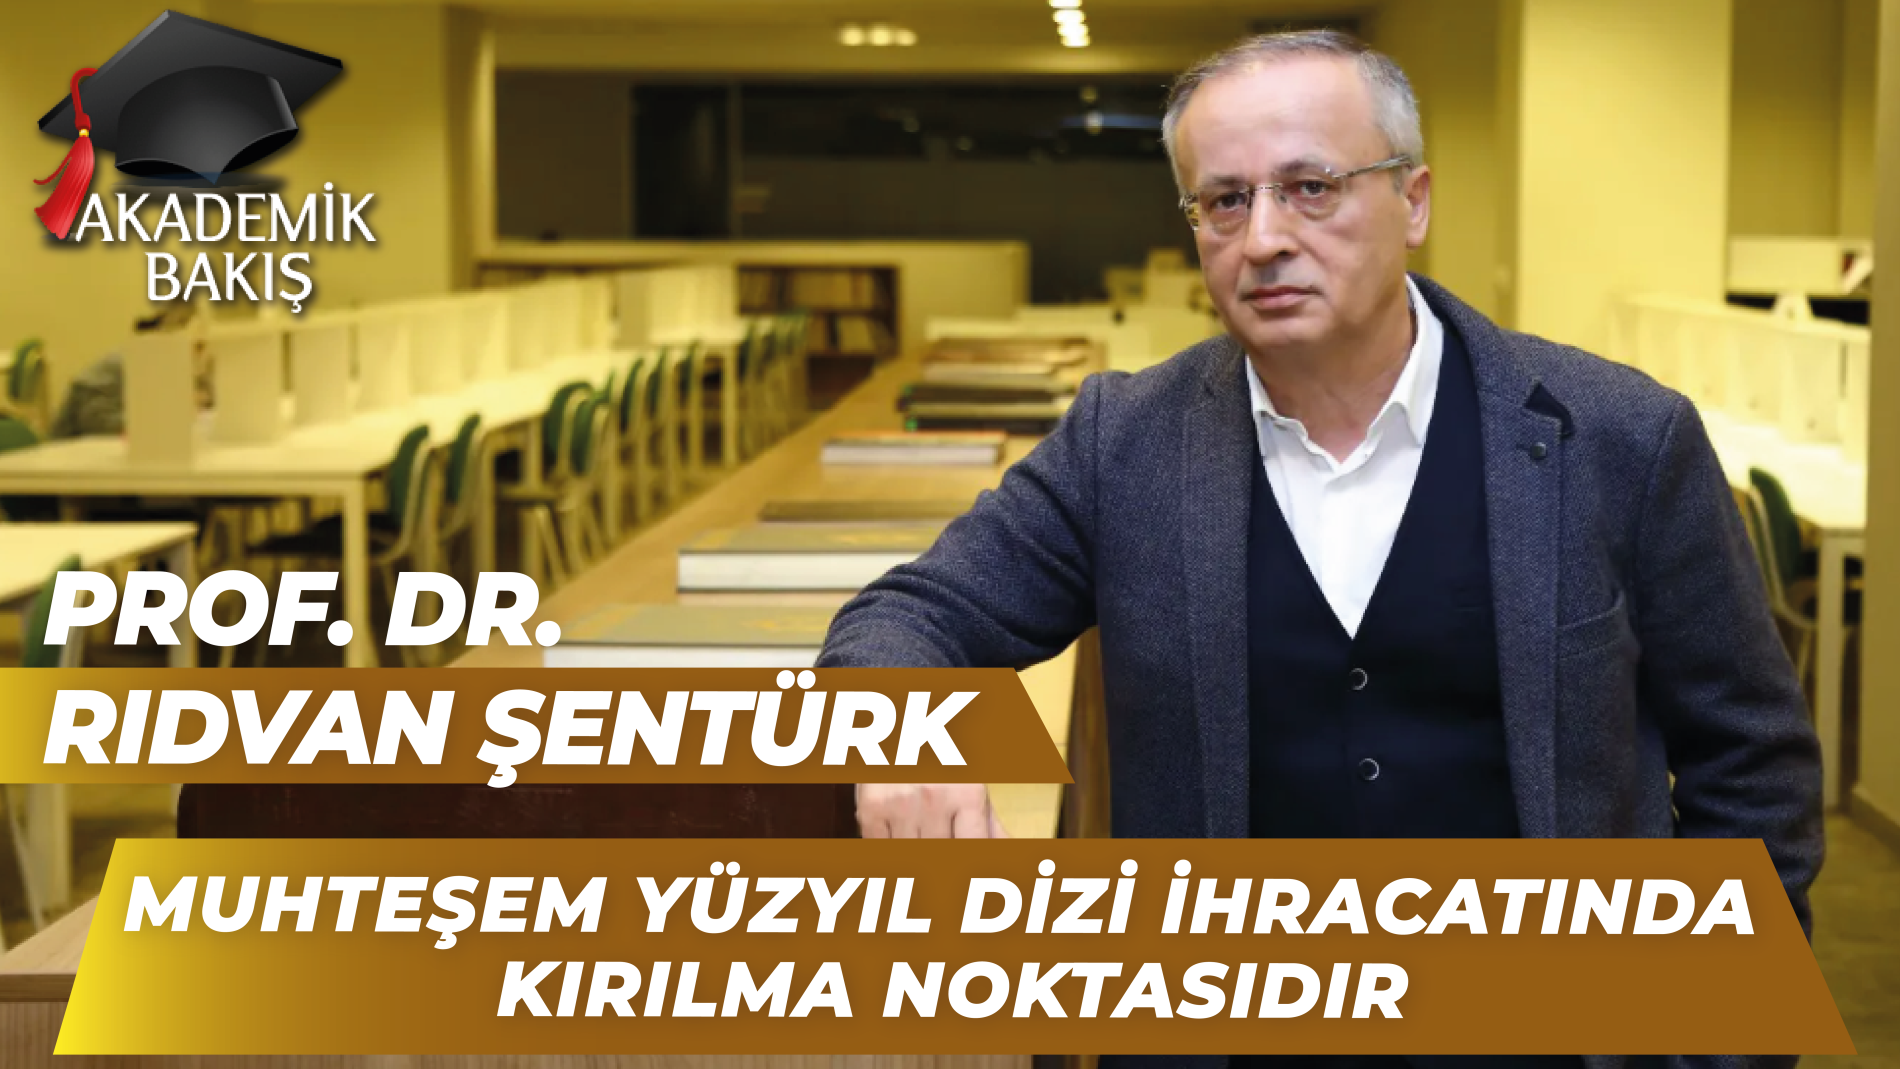 Prof. Dr. Rıdvan Şentürk Akademik Bakış’ta Dizi Endüstrisini Anlattı